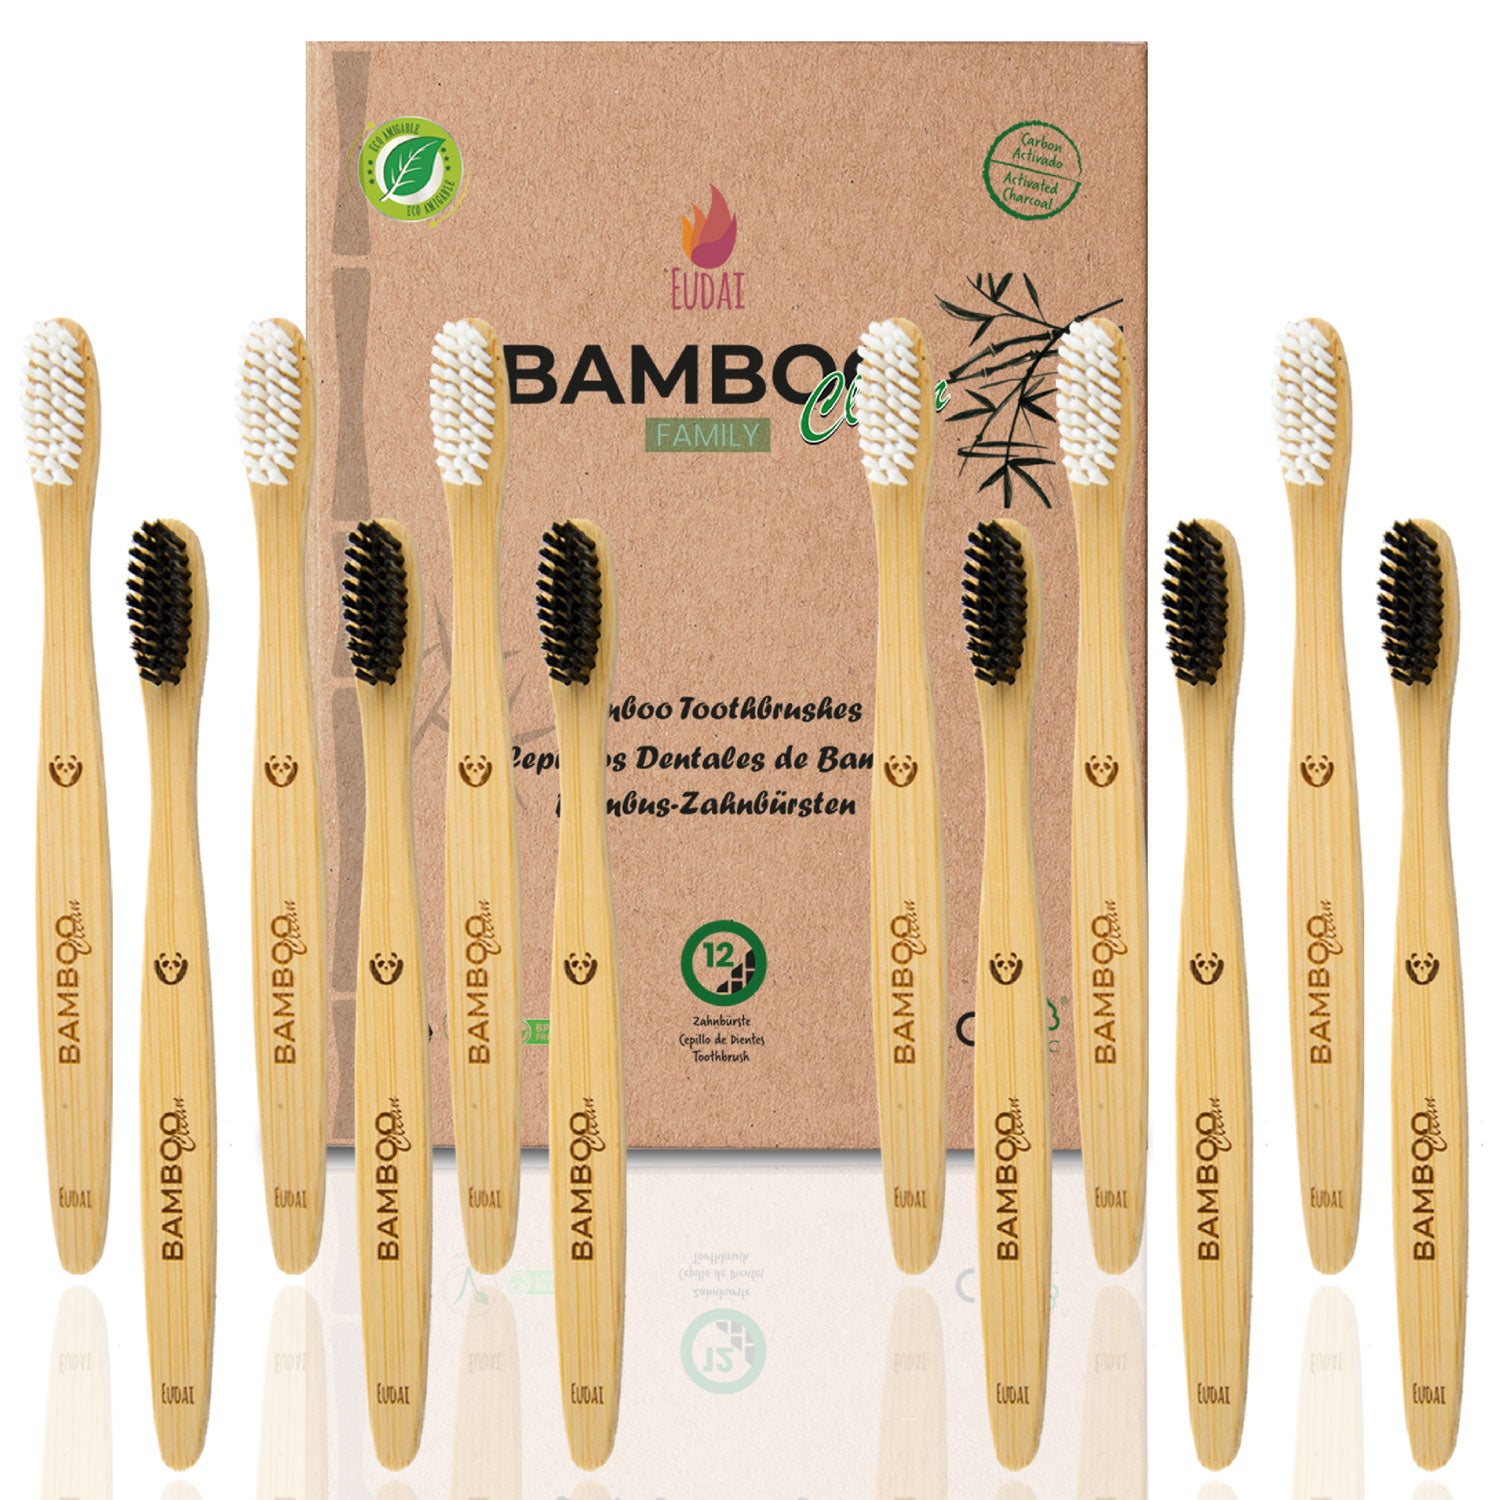 Bamboo Clean Family 12 Cepillos de Dientes de Bambú con Cerdas Suaves sin BPA